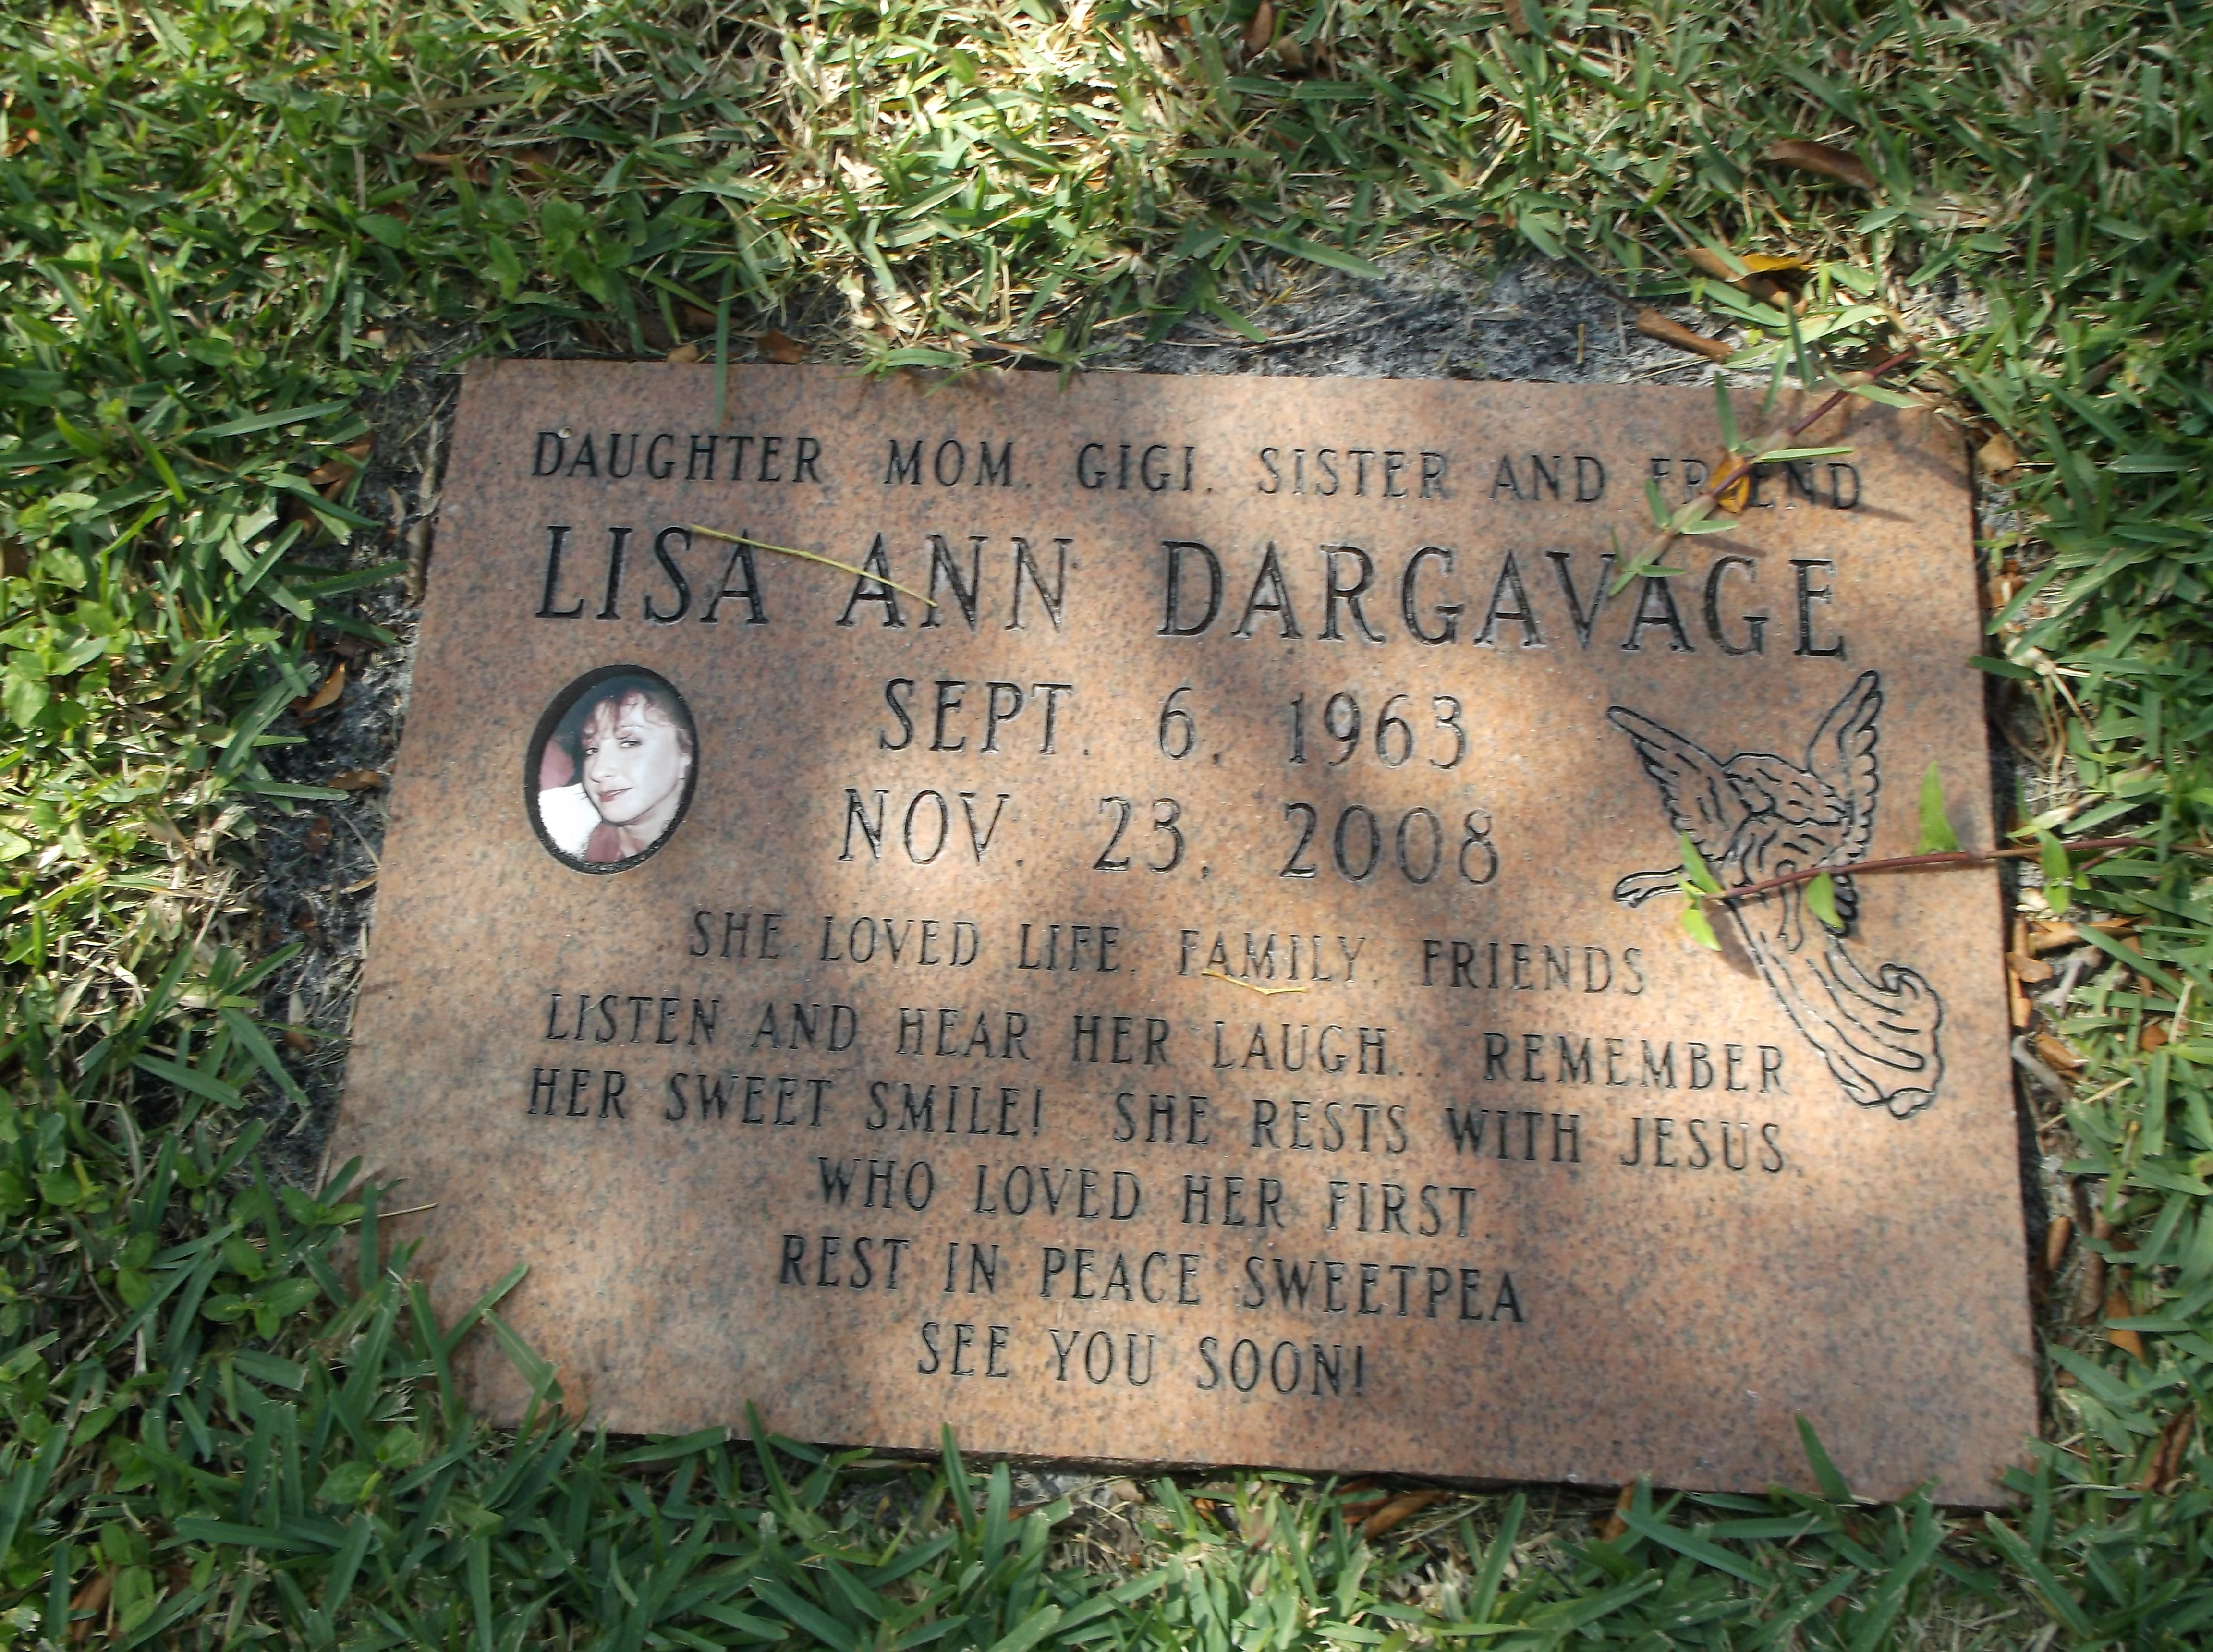 Lisa Ann Dargavage